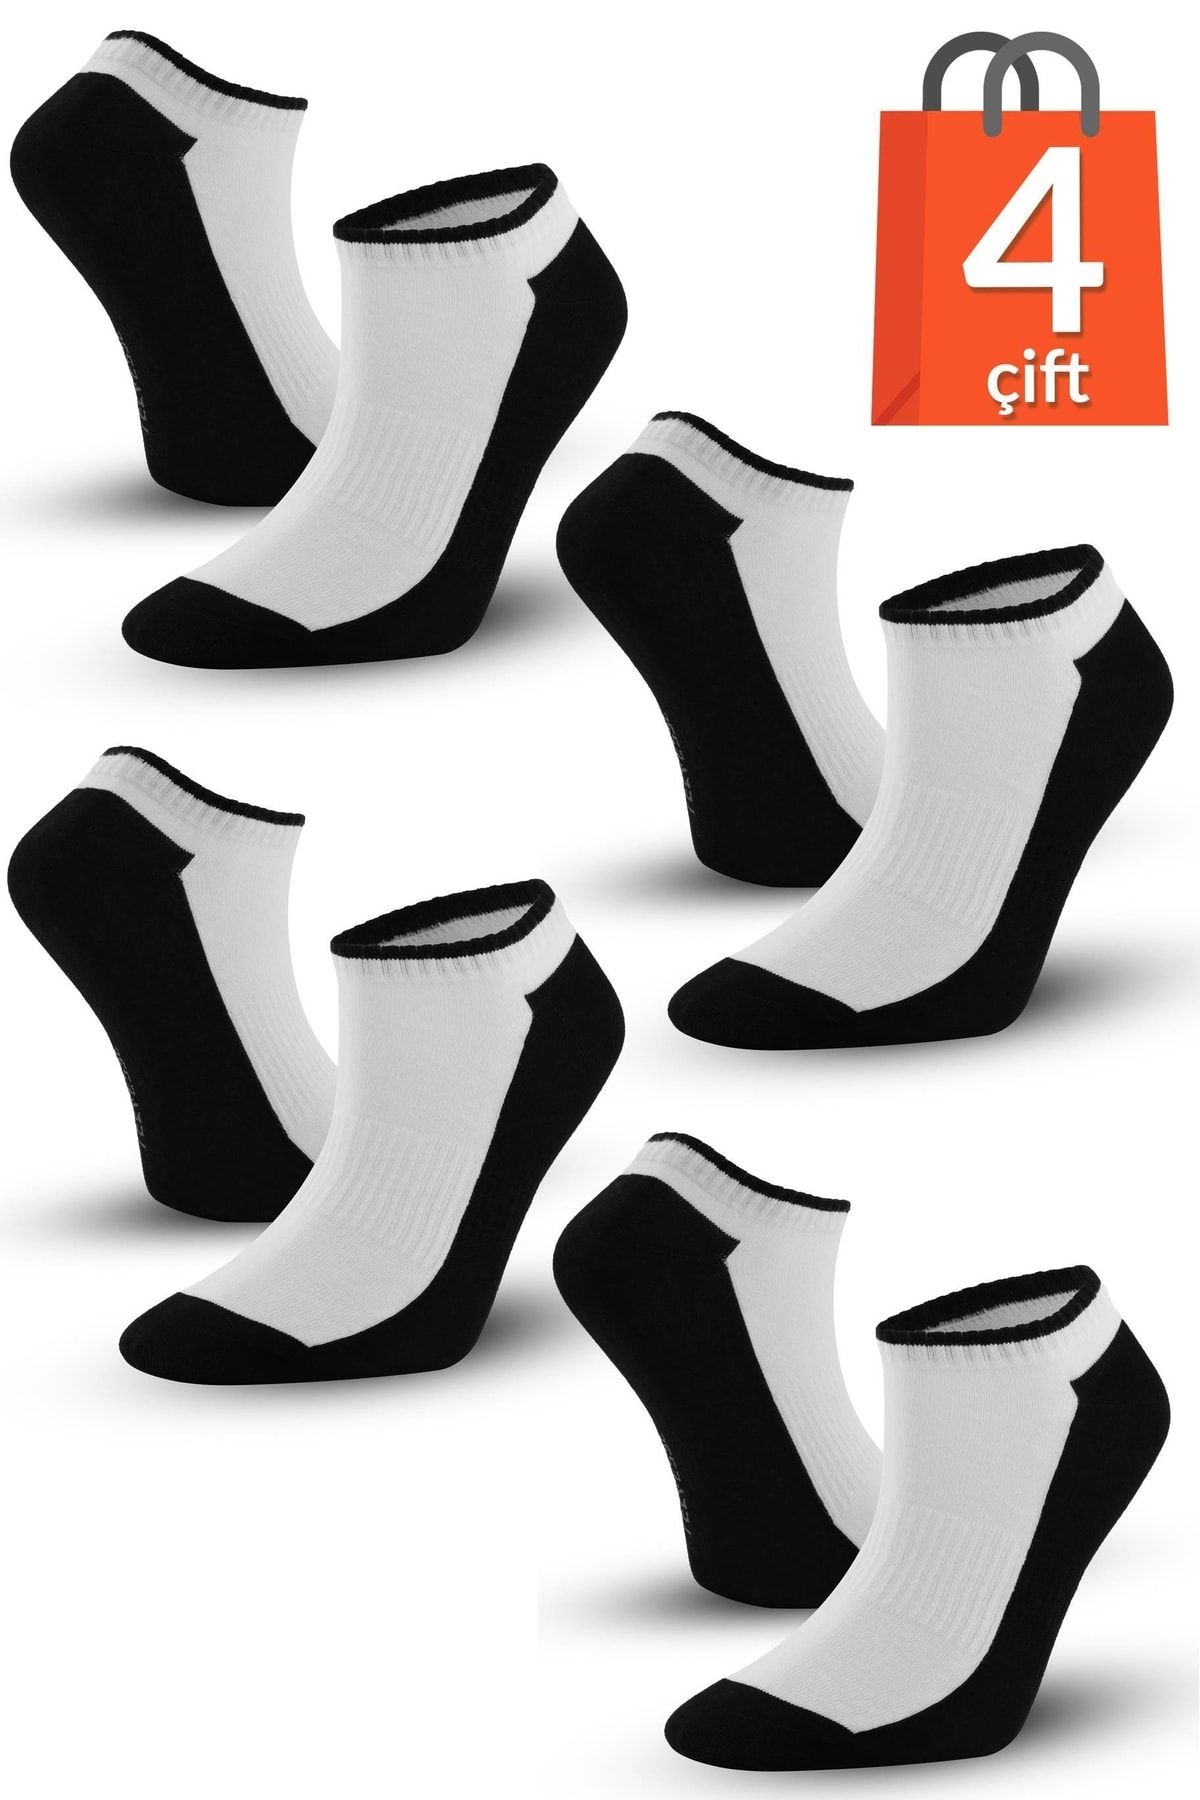 Telvesse 4 Çift Marcher Dikişsiz Patik Çorap Spor Kısa Çift Renkli Kısa Konç Spor Çorabı Siyah-beyaz